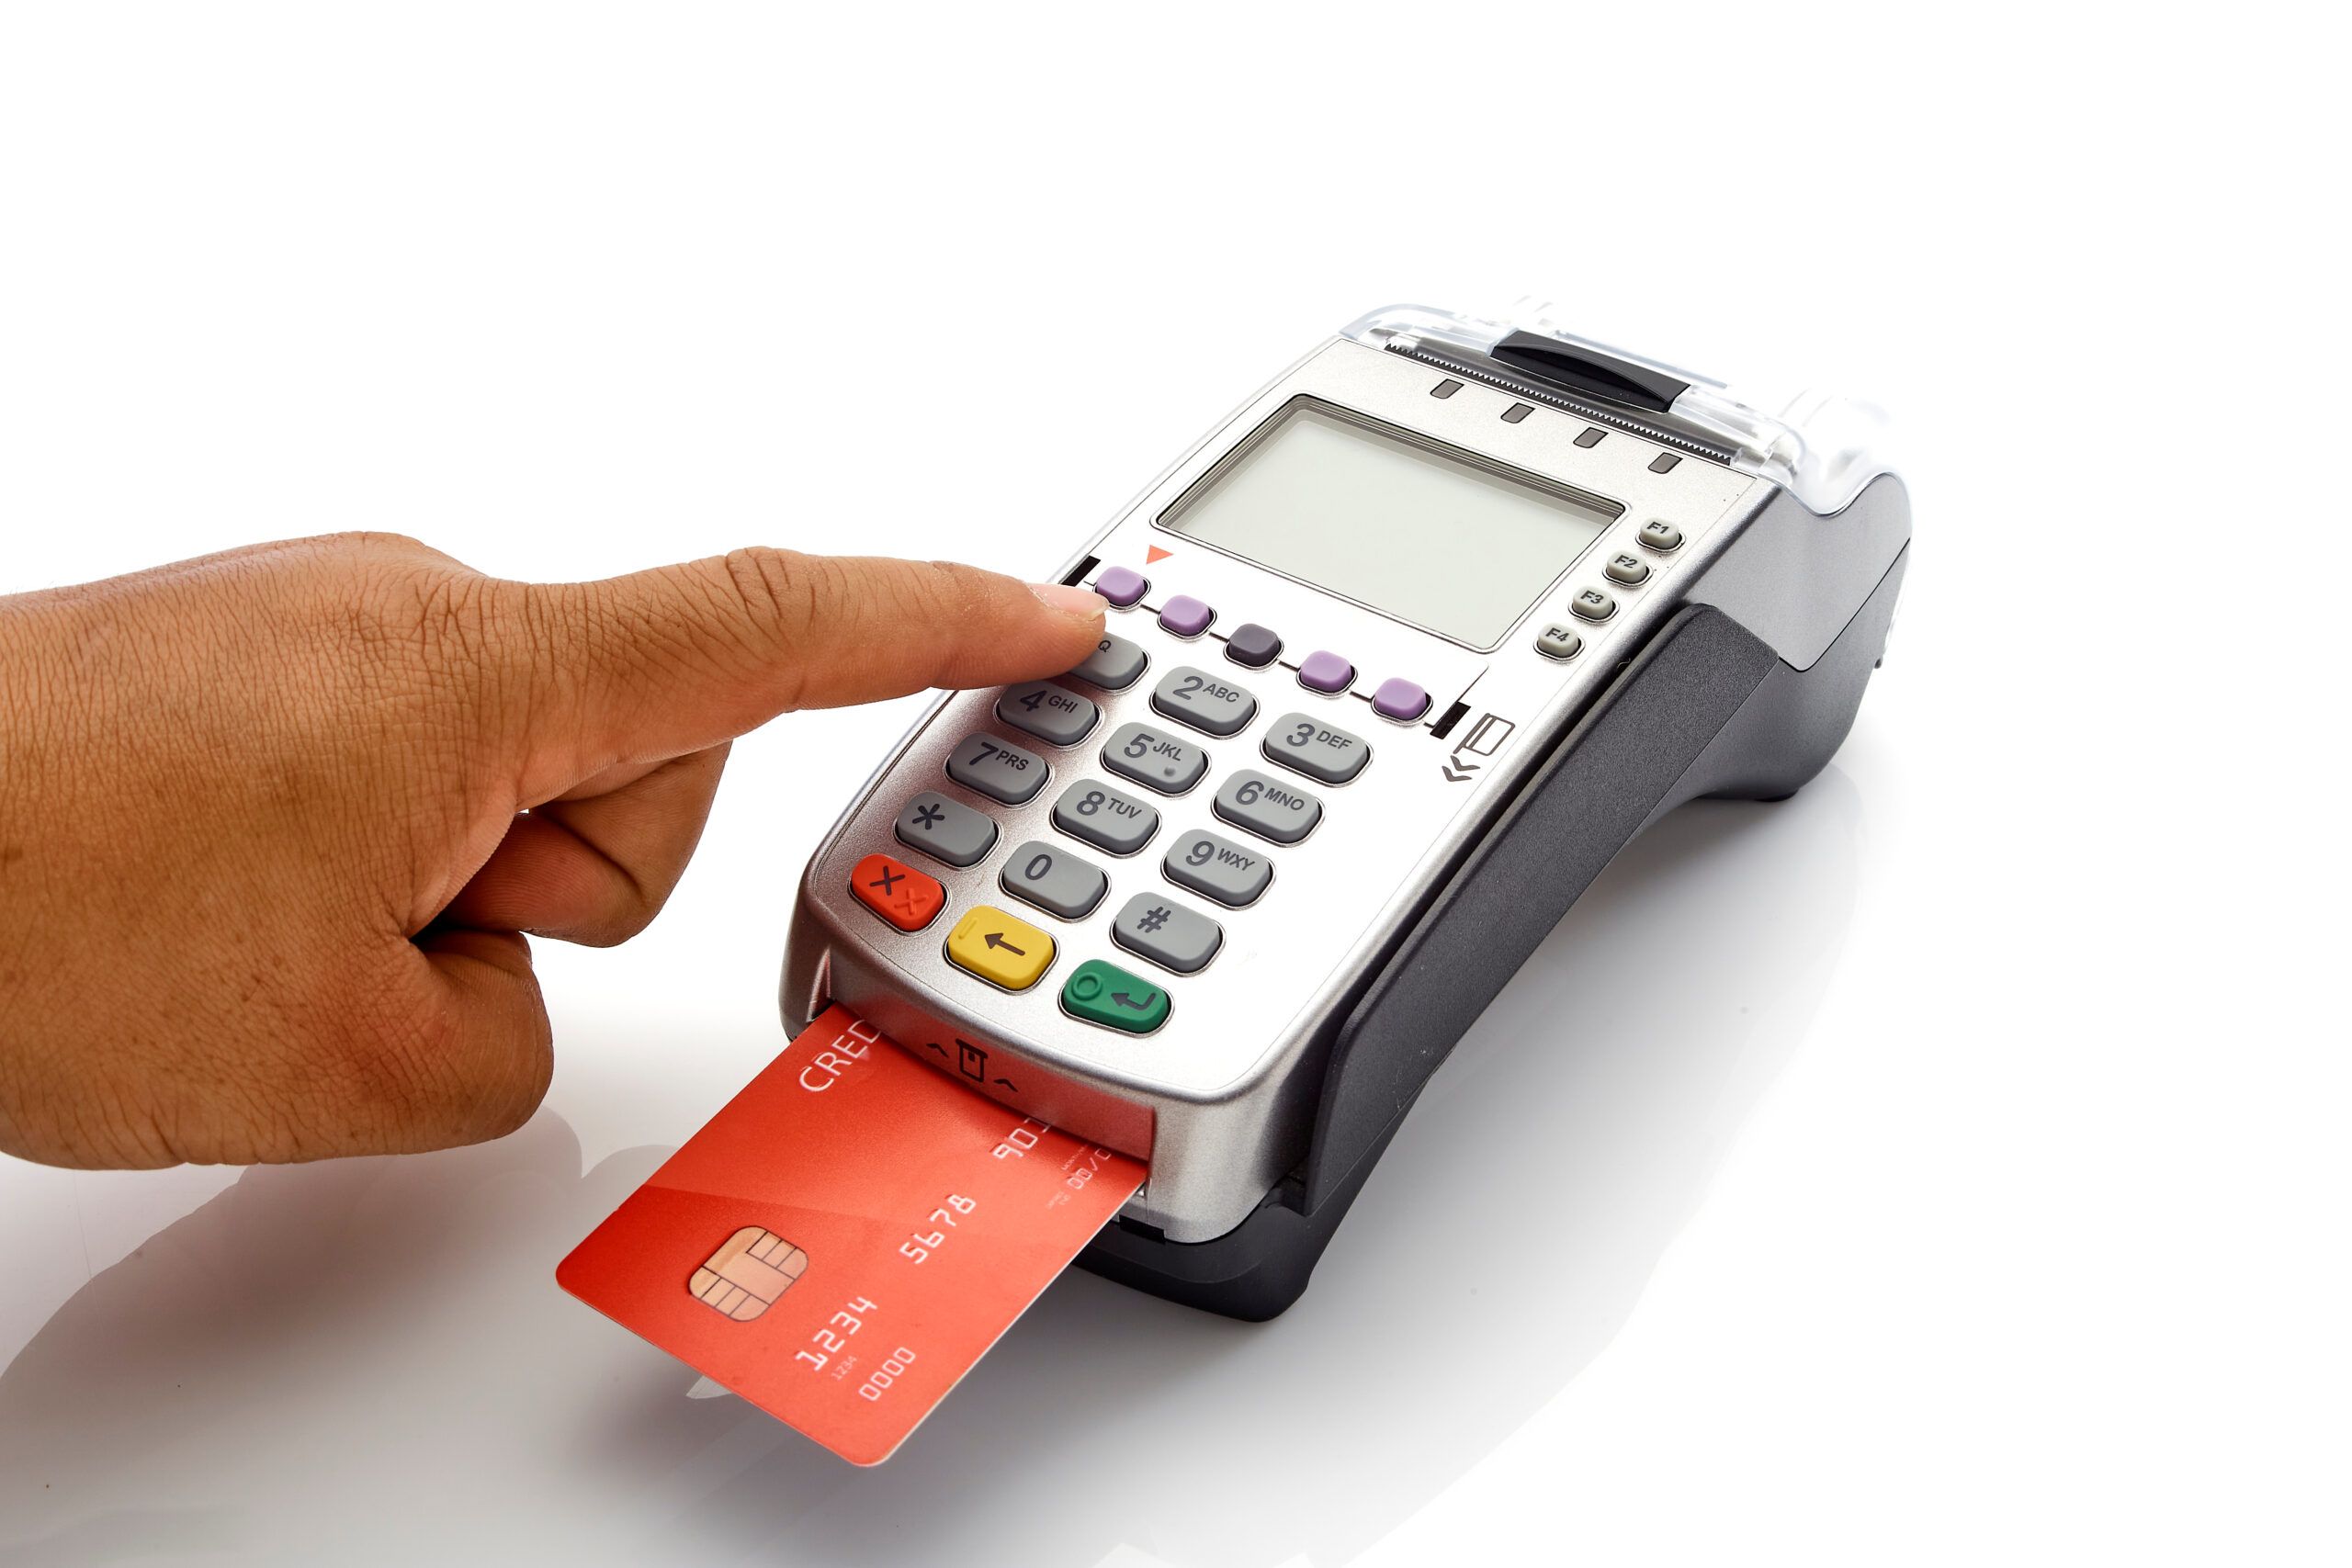 Maquininhas Getnet têm taxa de 2% para compras no débito e crédito